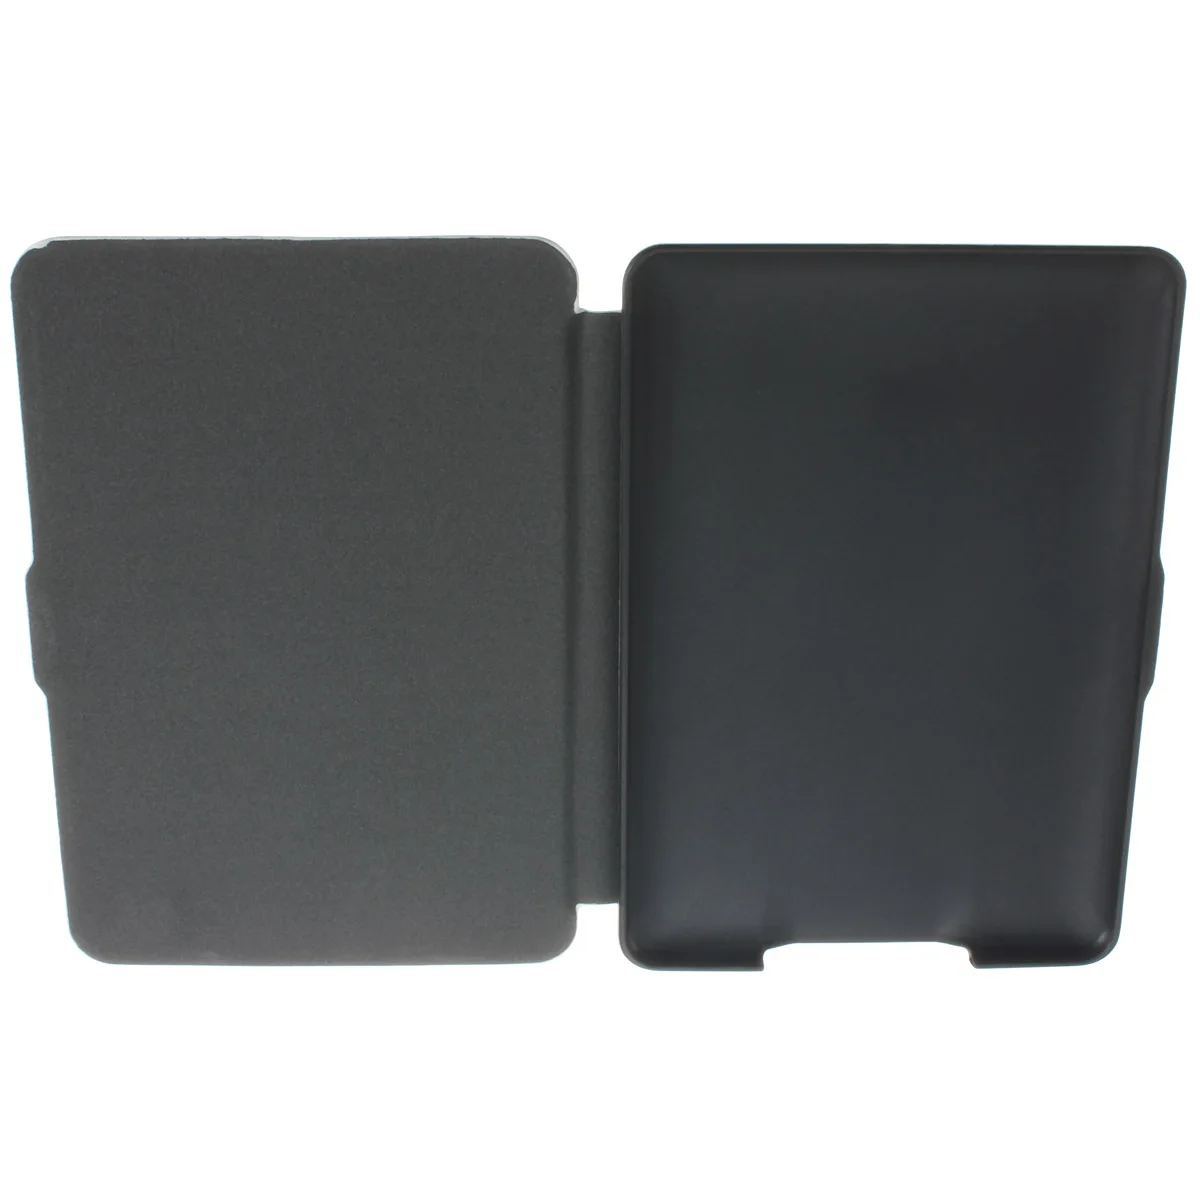 Ультратонкий кожаный чехол для Amazon kindle paperwhite 1 2 3 чехол для планшета kindle Paperwhite 2013 6th+ пленка+ стилус